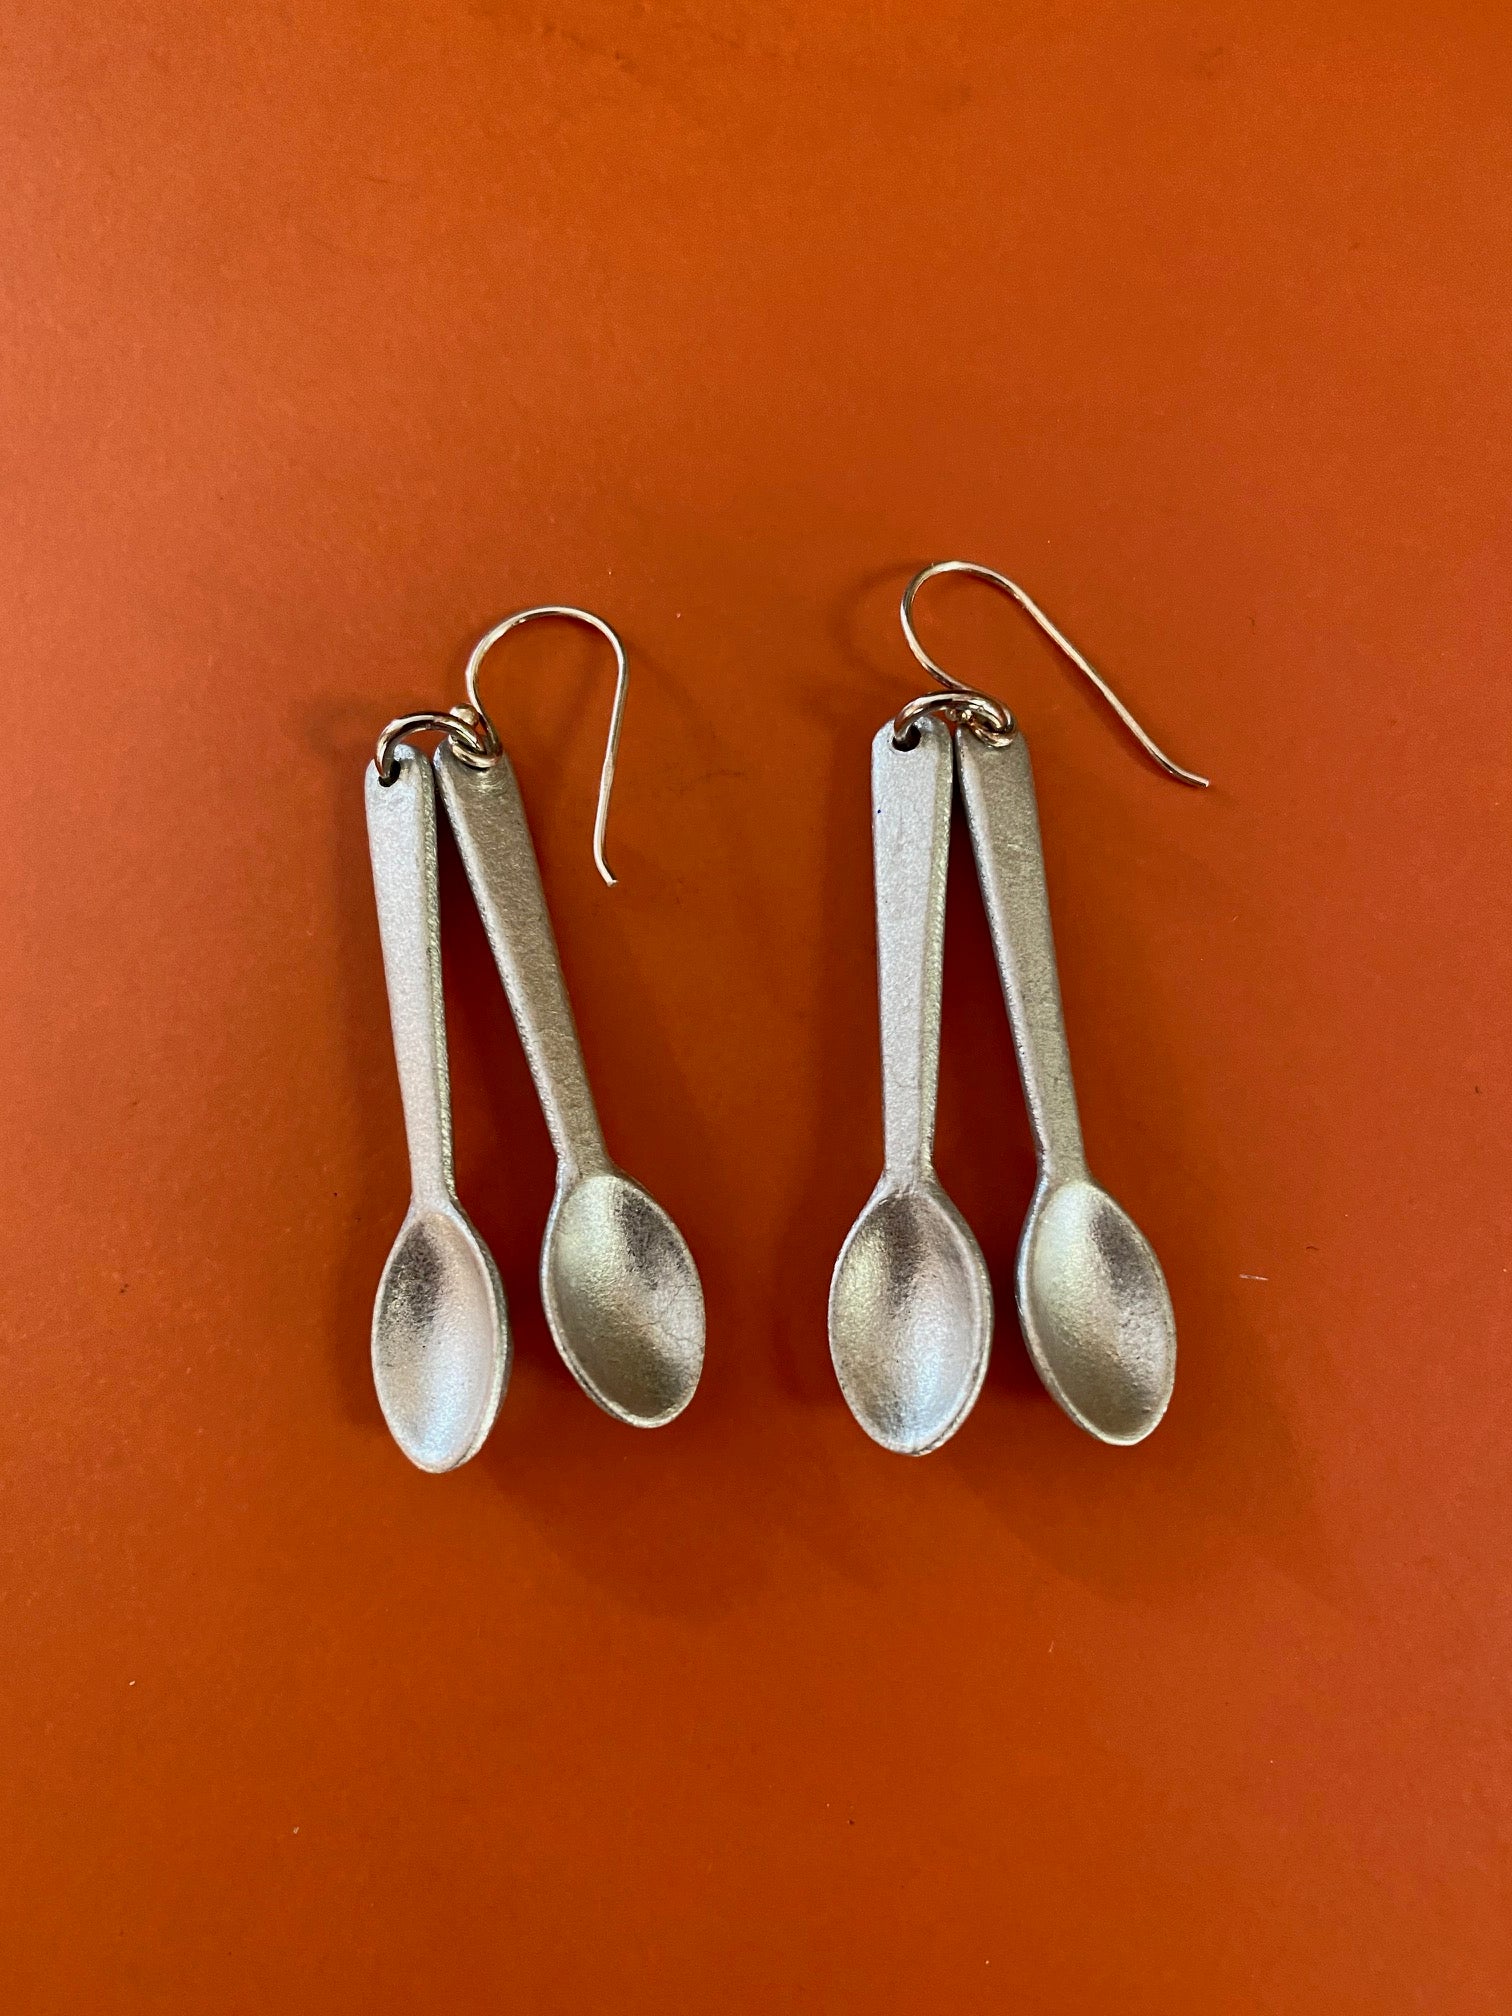 UXO "Spoons" Earrings